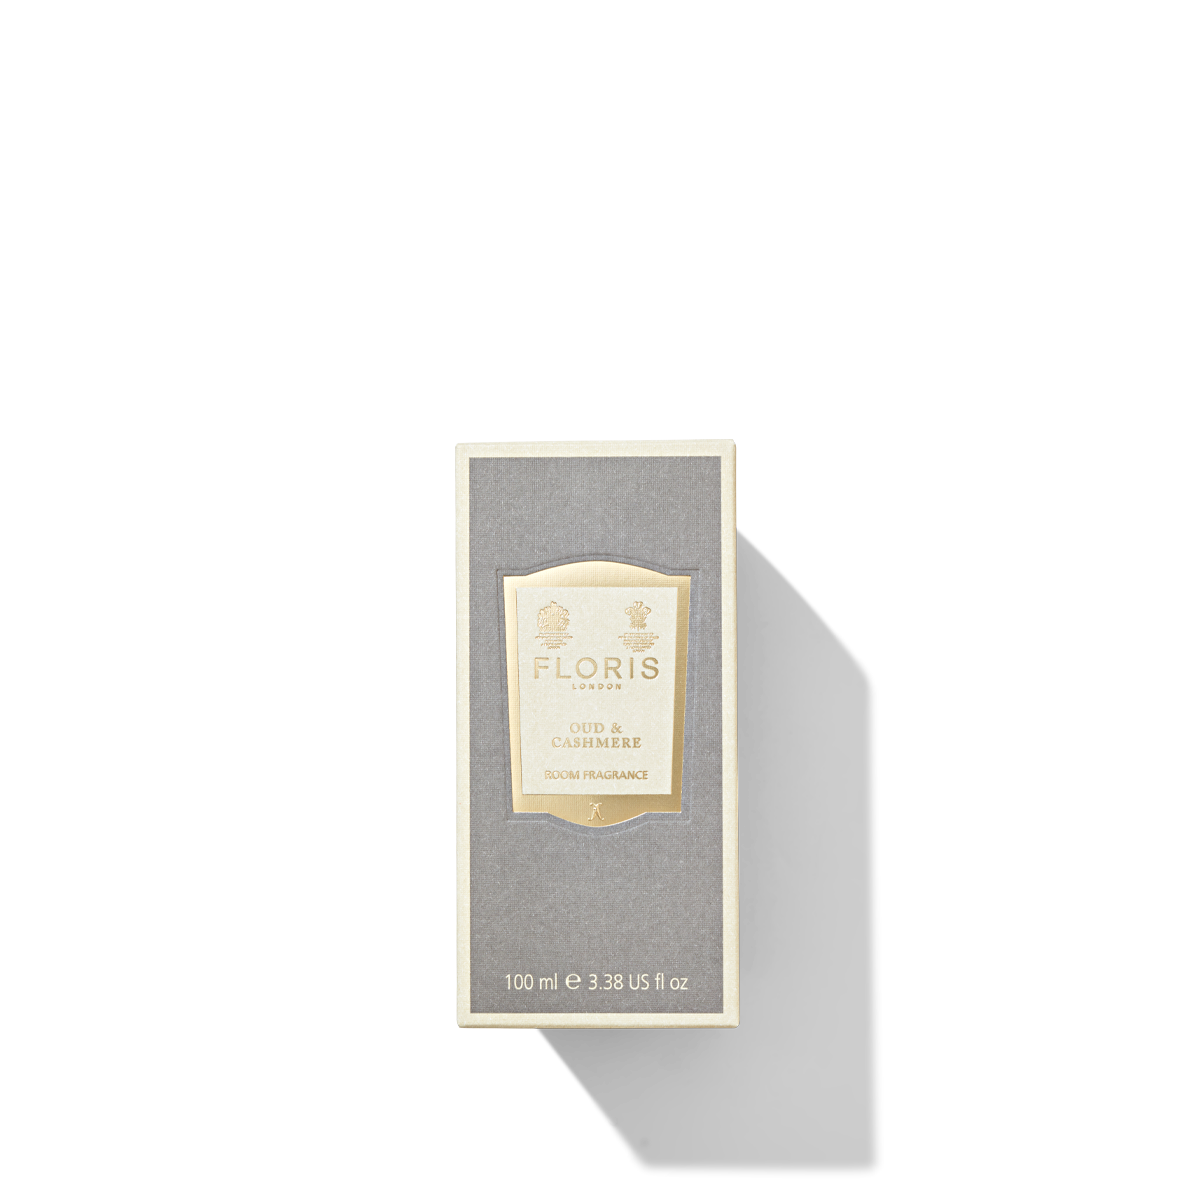 Floris London Oud & Cashmere Room Fragrance box